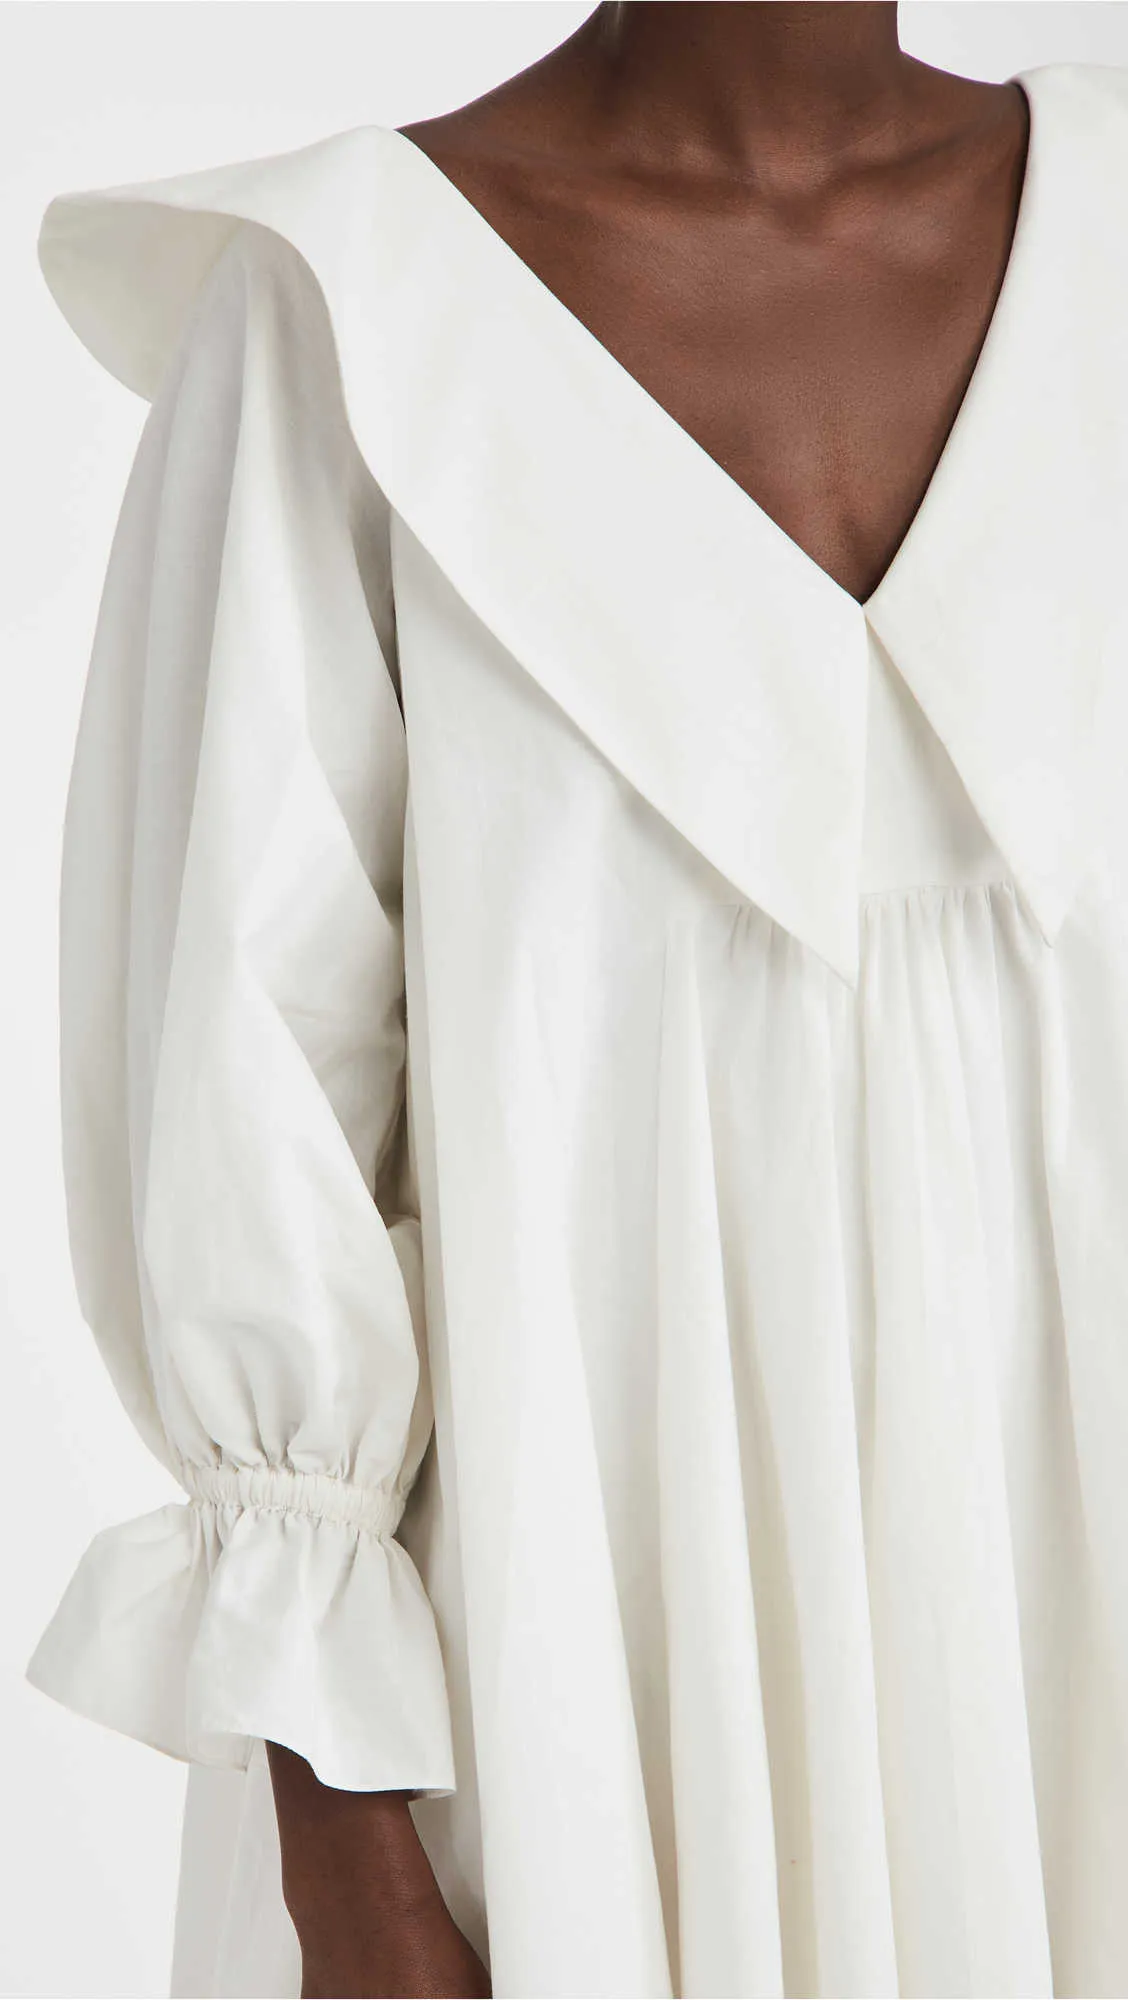 Mini robe blanche pour femmes élégant col en v poignet papillon manches conçu une ligne robe de soirée décontracté lâche robe douce été 210630